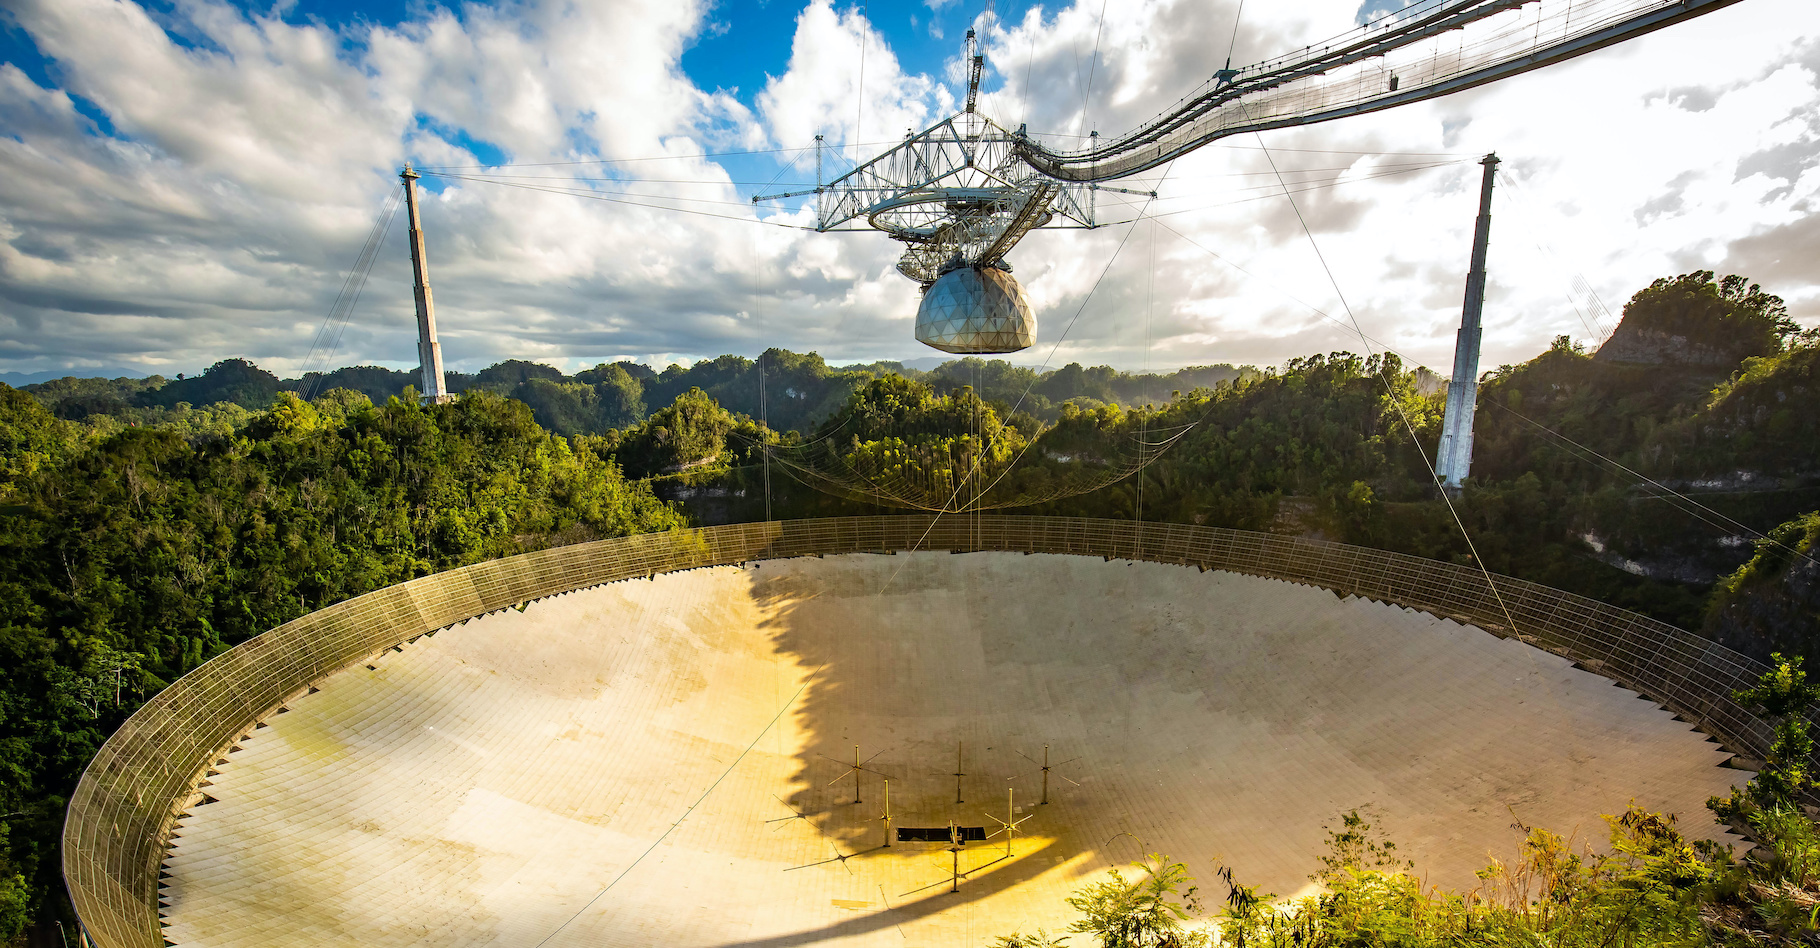 Le radiotélescope d’Arecibo a longtemps été le plus grand radiotélescope simple jamais construit. En ce début de semaine, il a été gravement endommagé par un incident technique. © PhotoSpirit, Adobe Stock